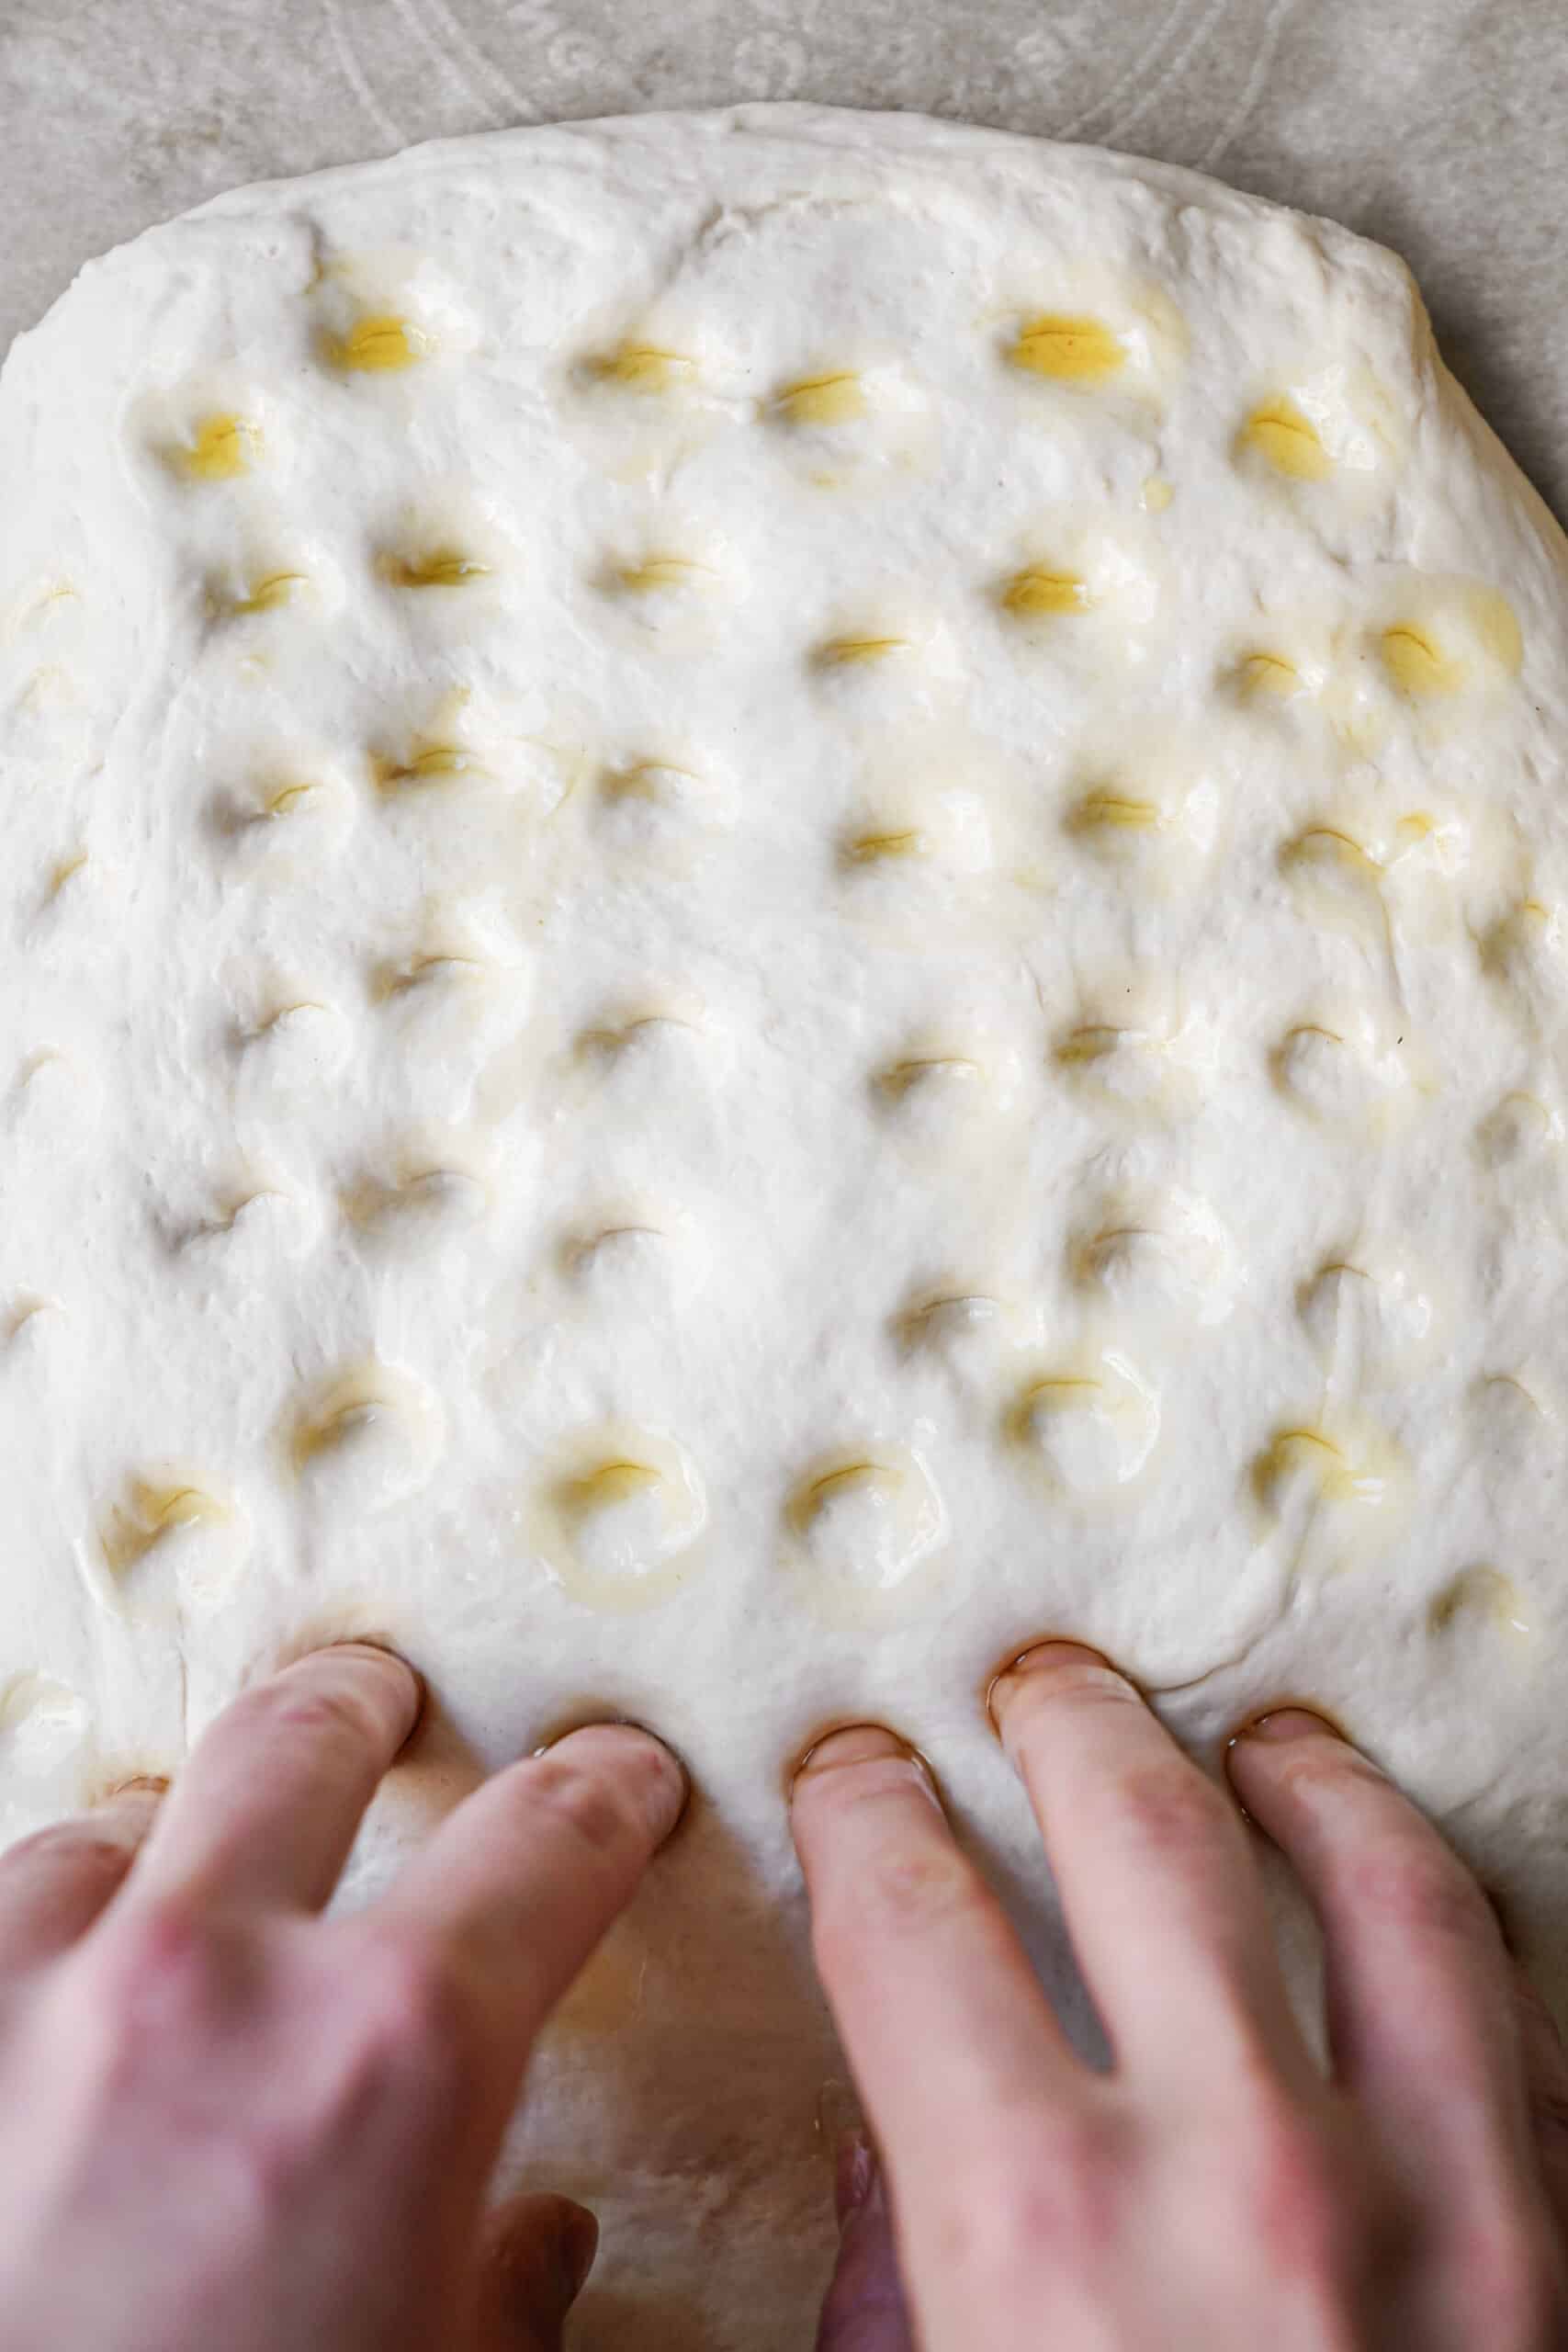 Finger prints in dough for Focaccia Bread Recipe